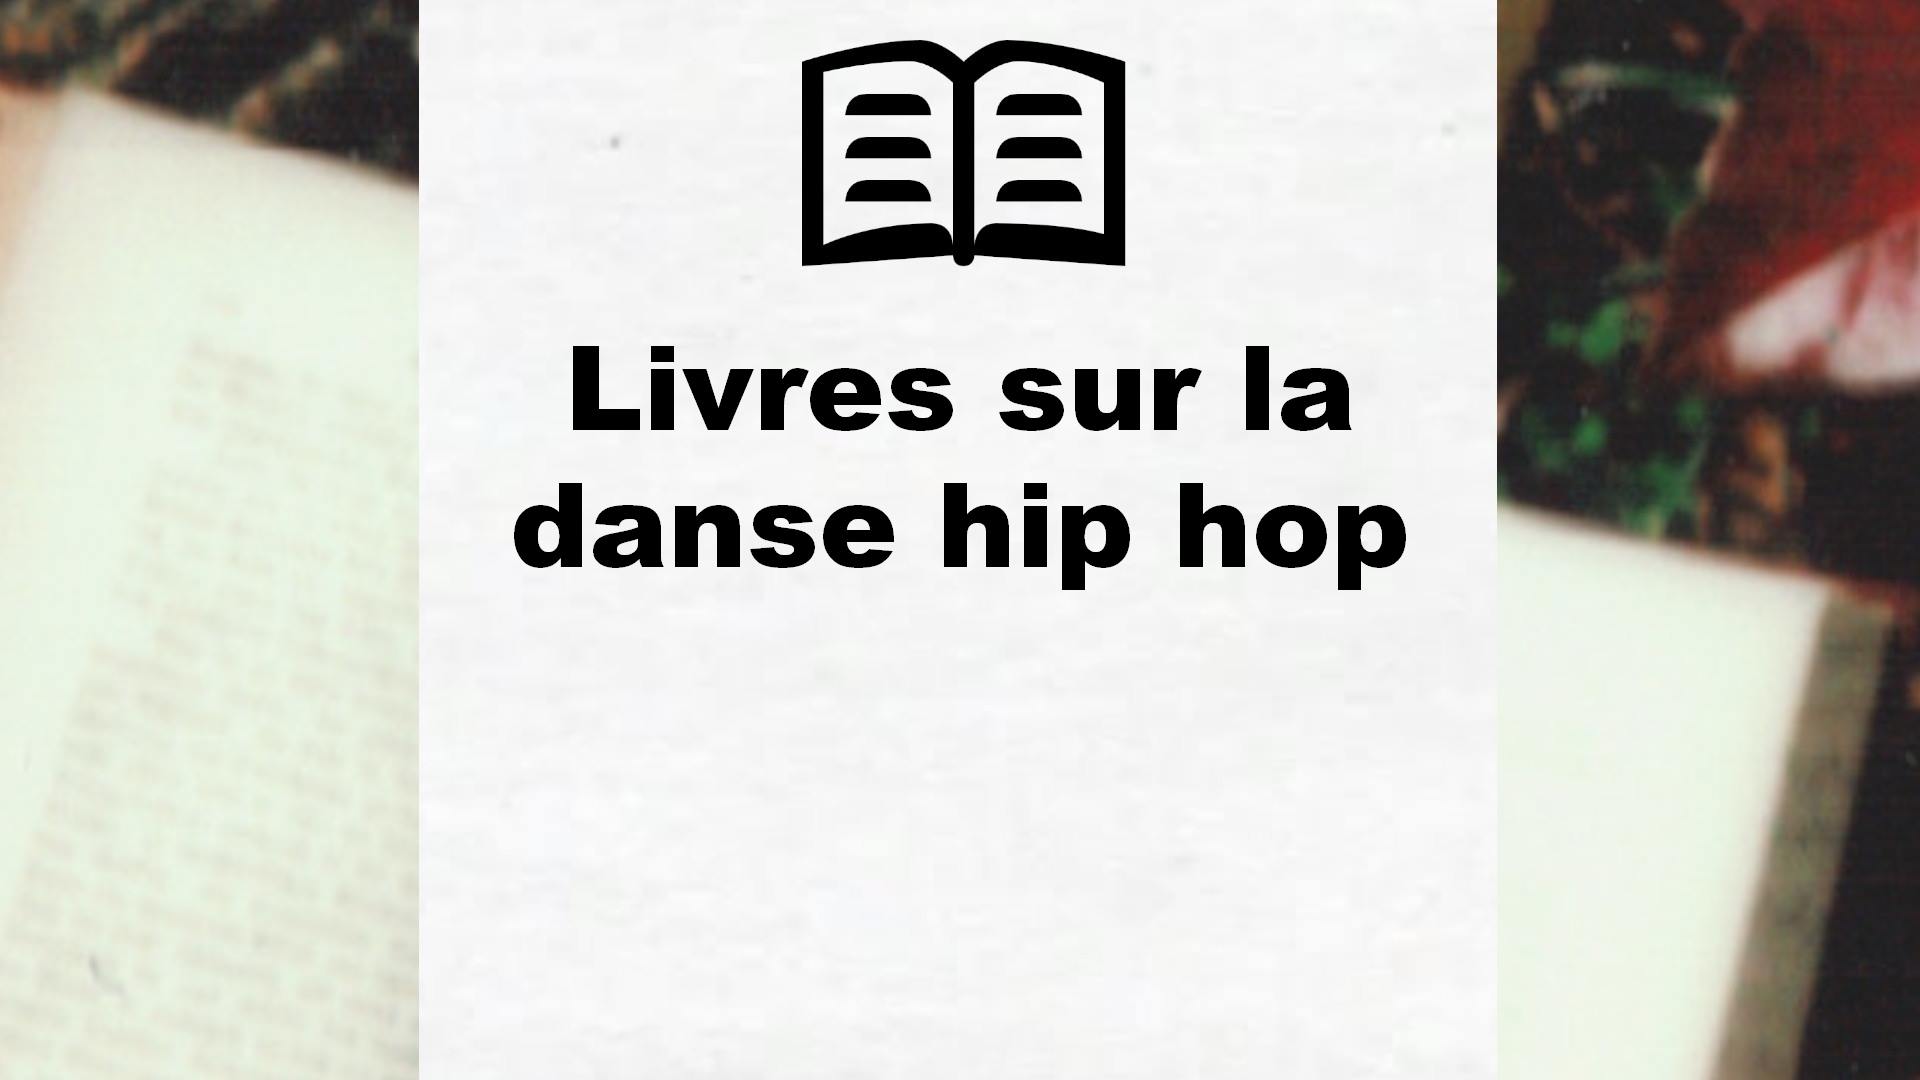 Livres sur la danse hip hop